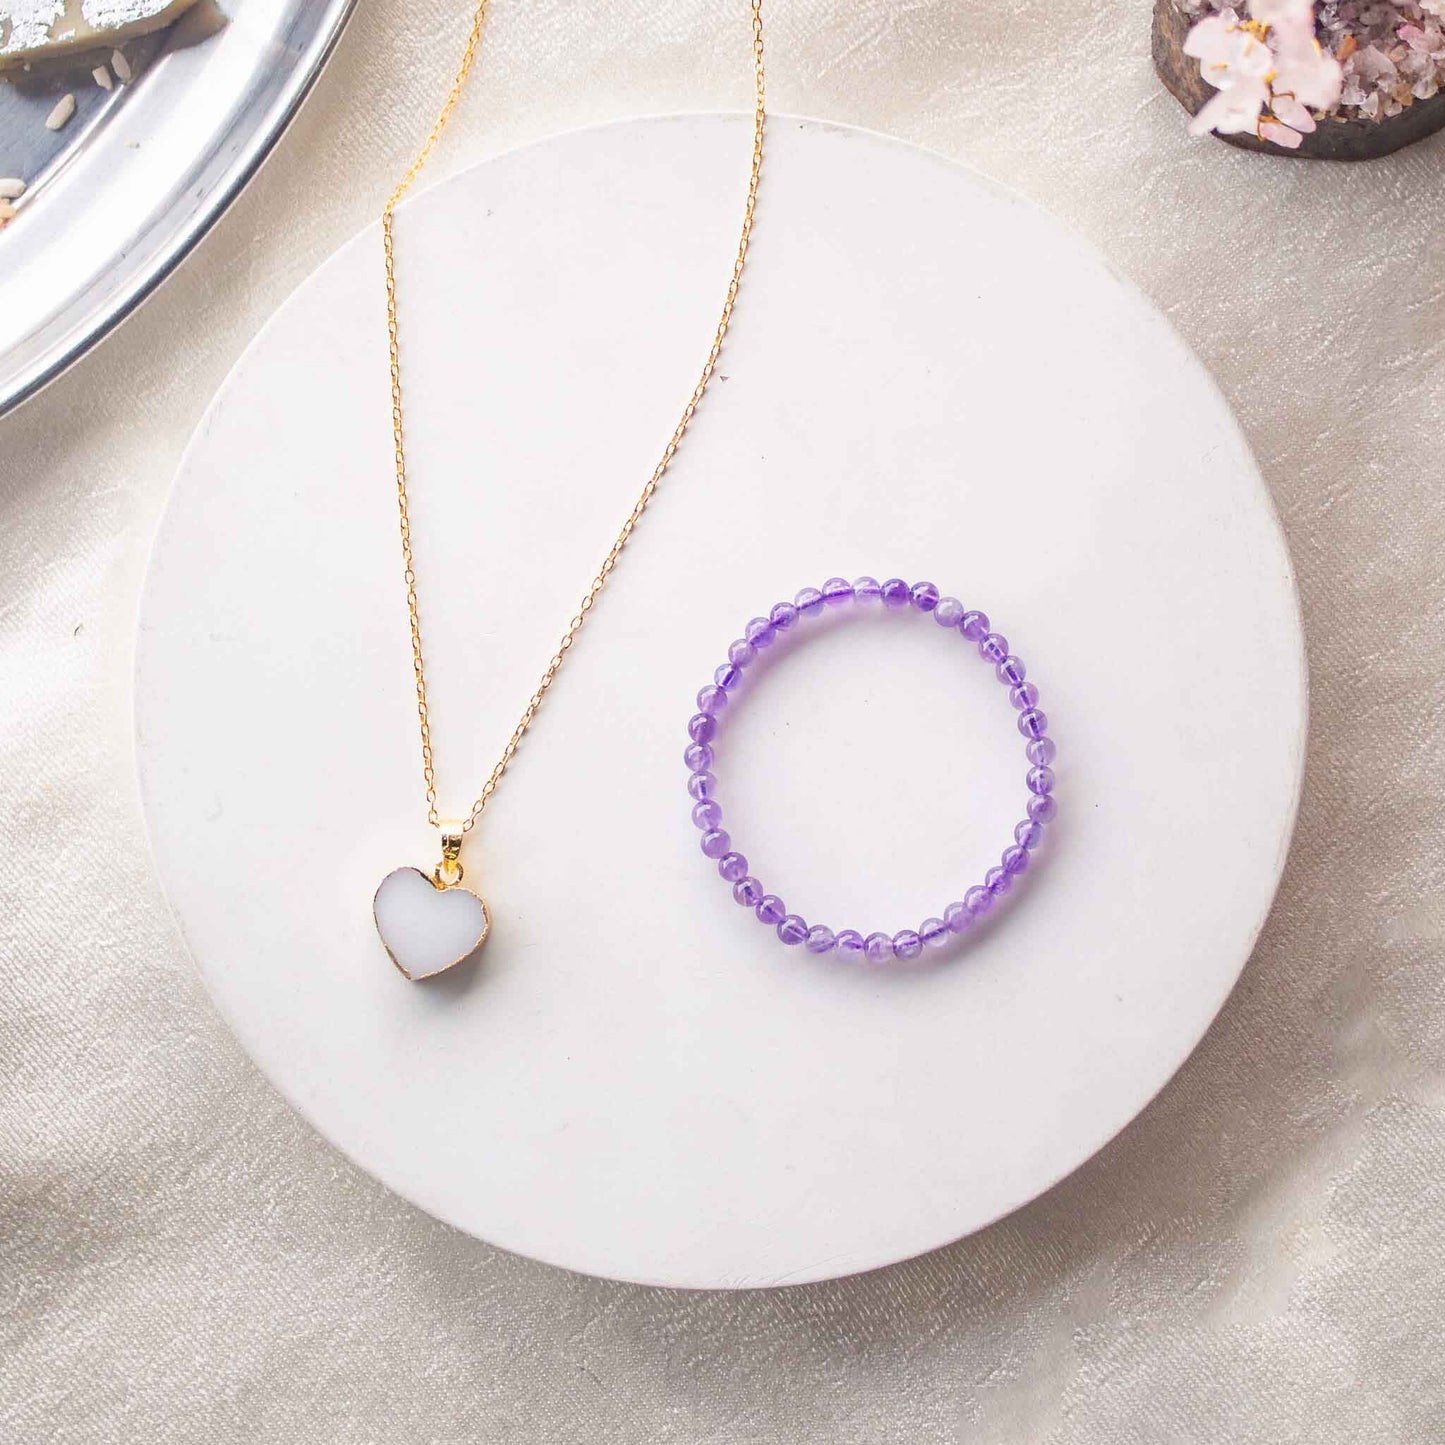 amethyst 4mm beads bracelet and white druzy pendant gift hamper for sister